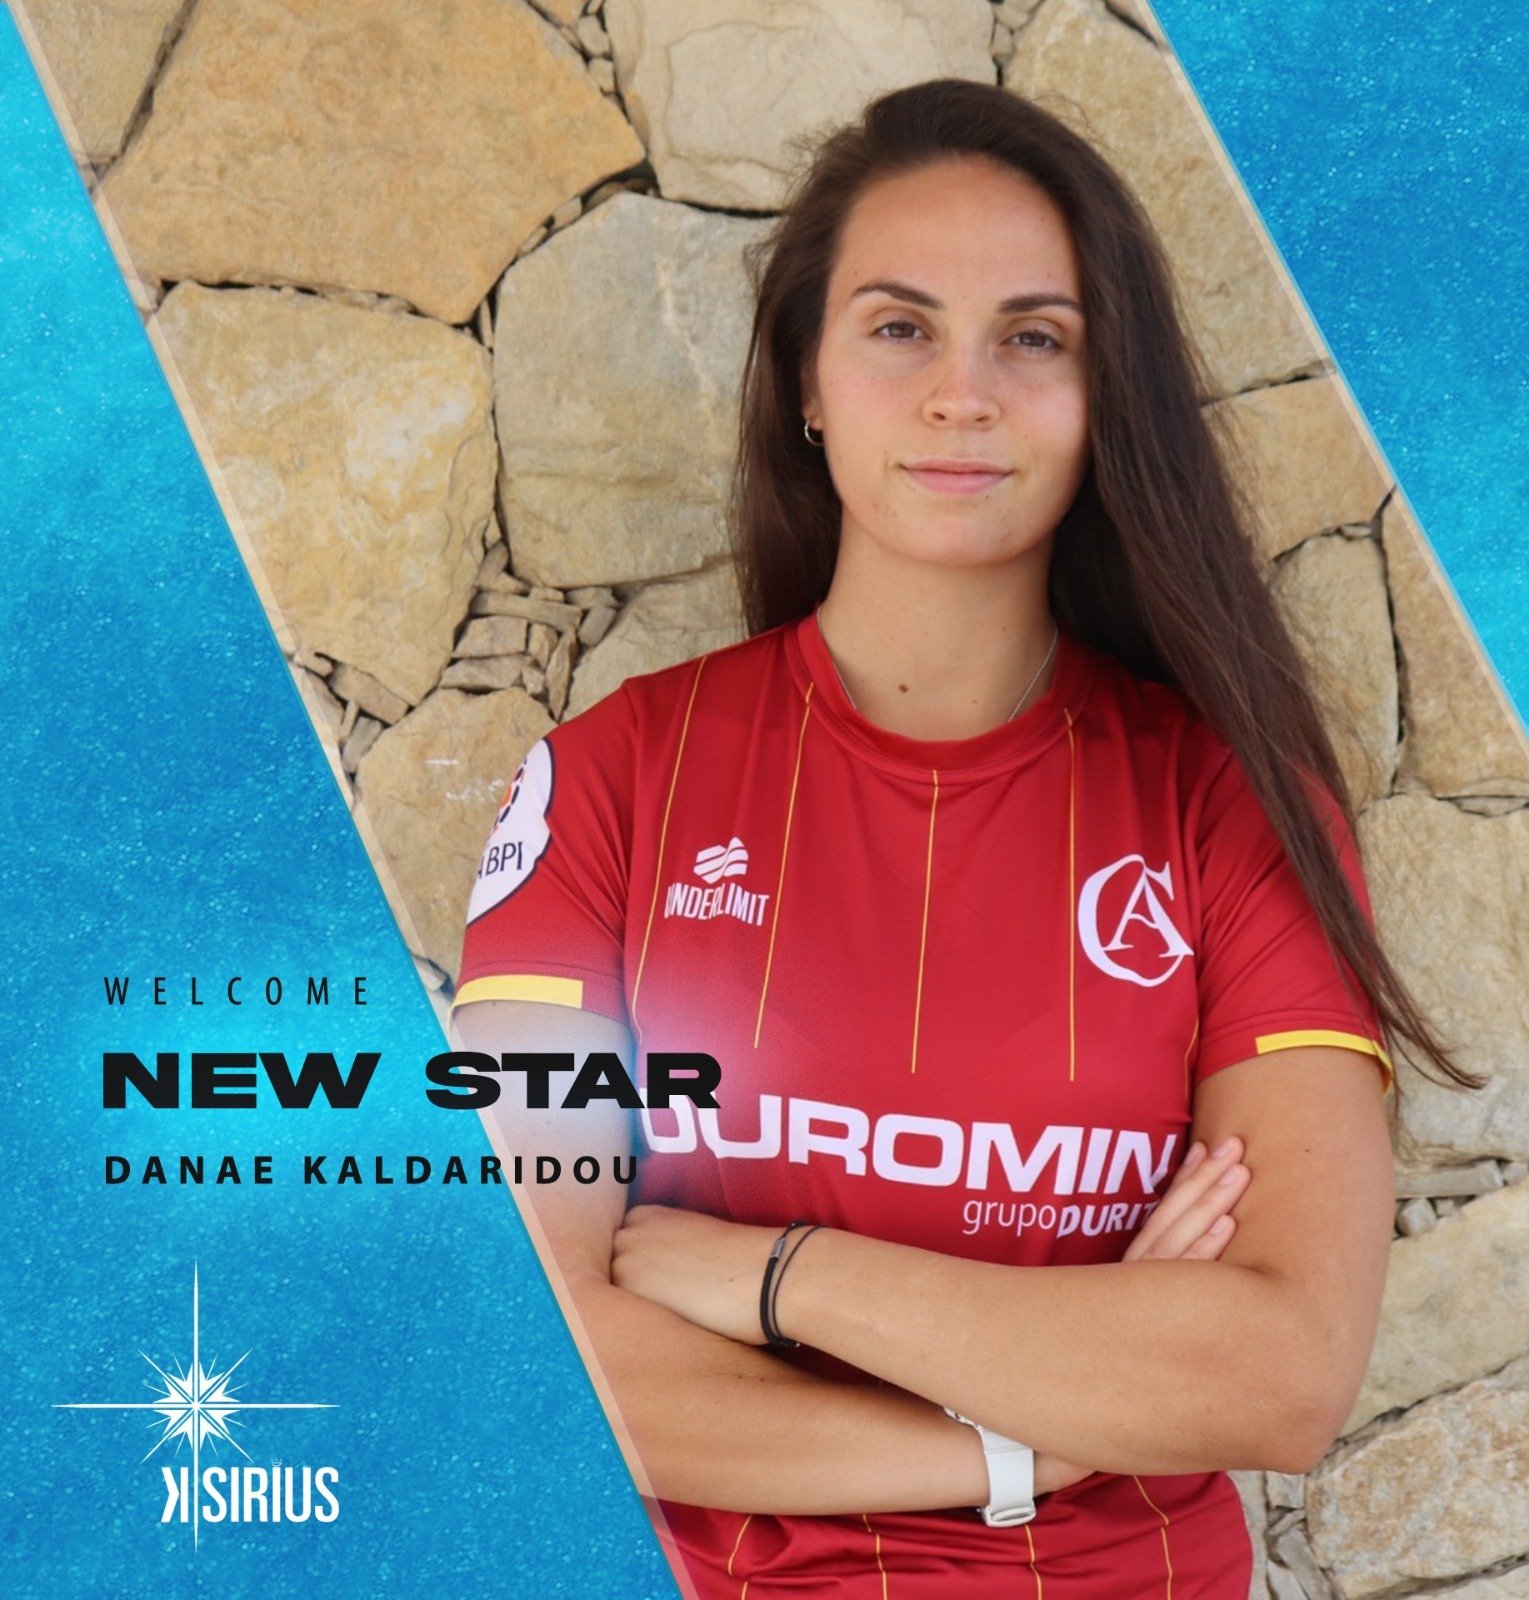 New Star: Danae Kaldaridou (Clube de Albergaria)